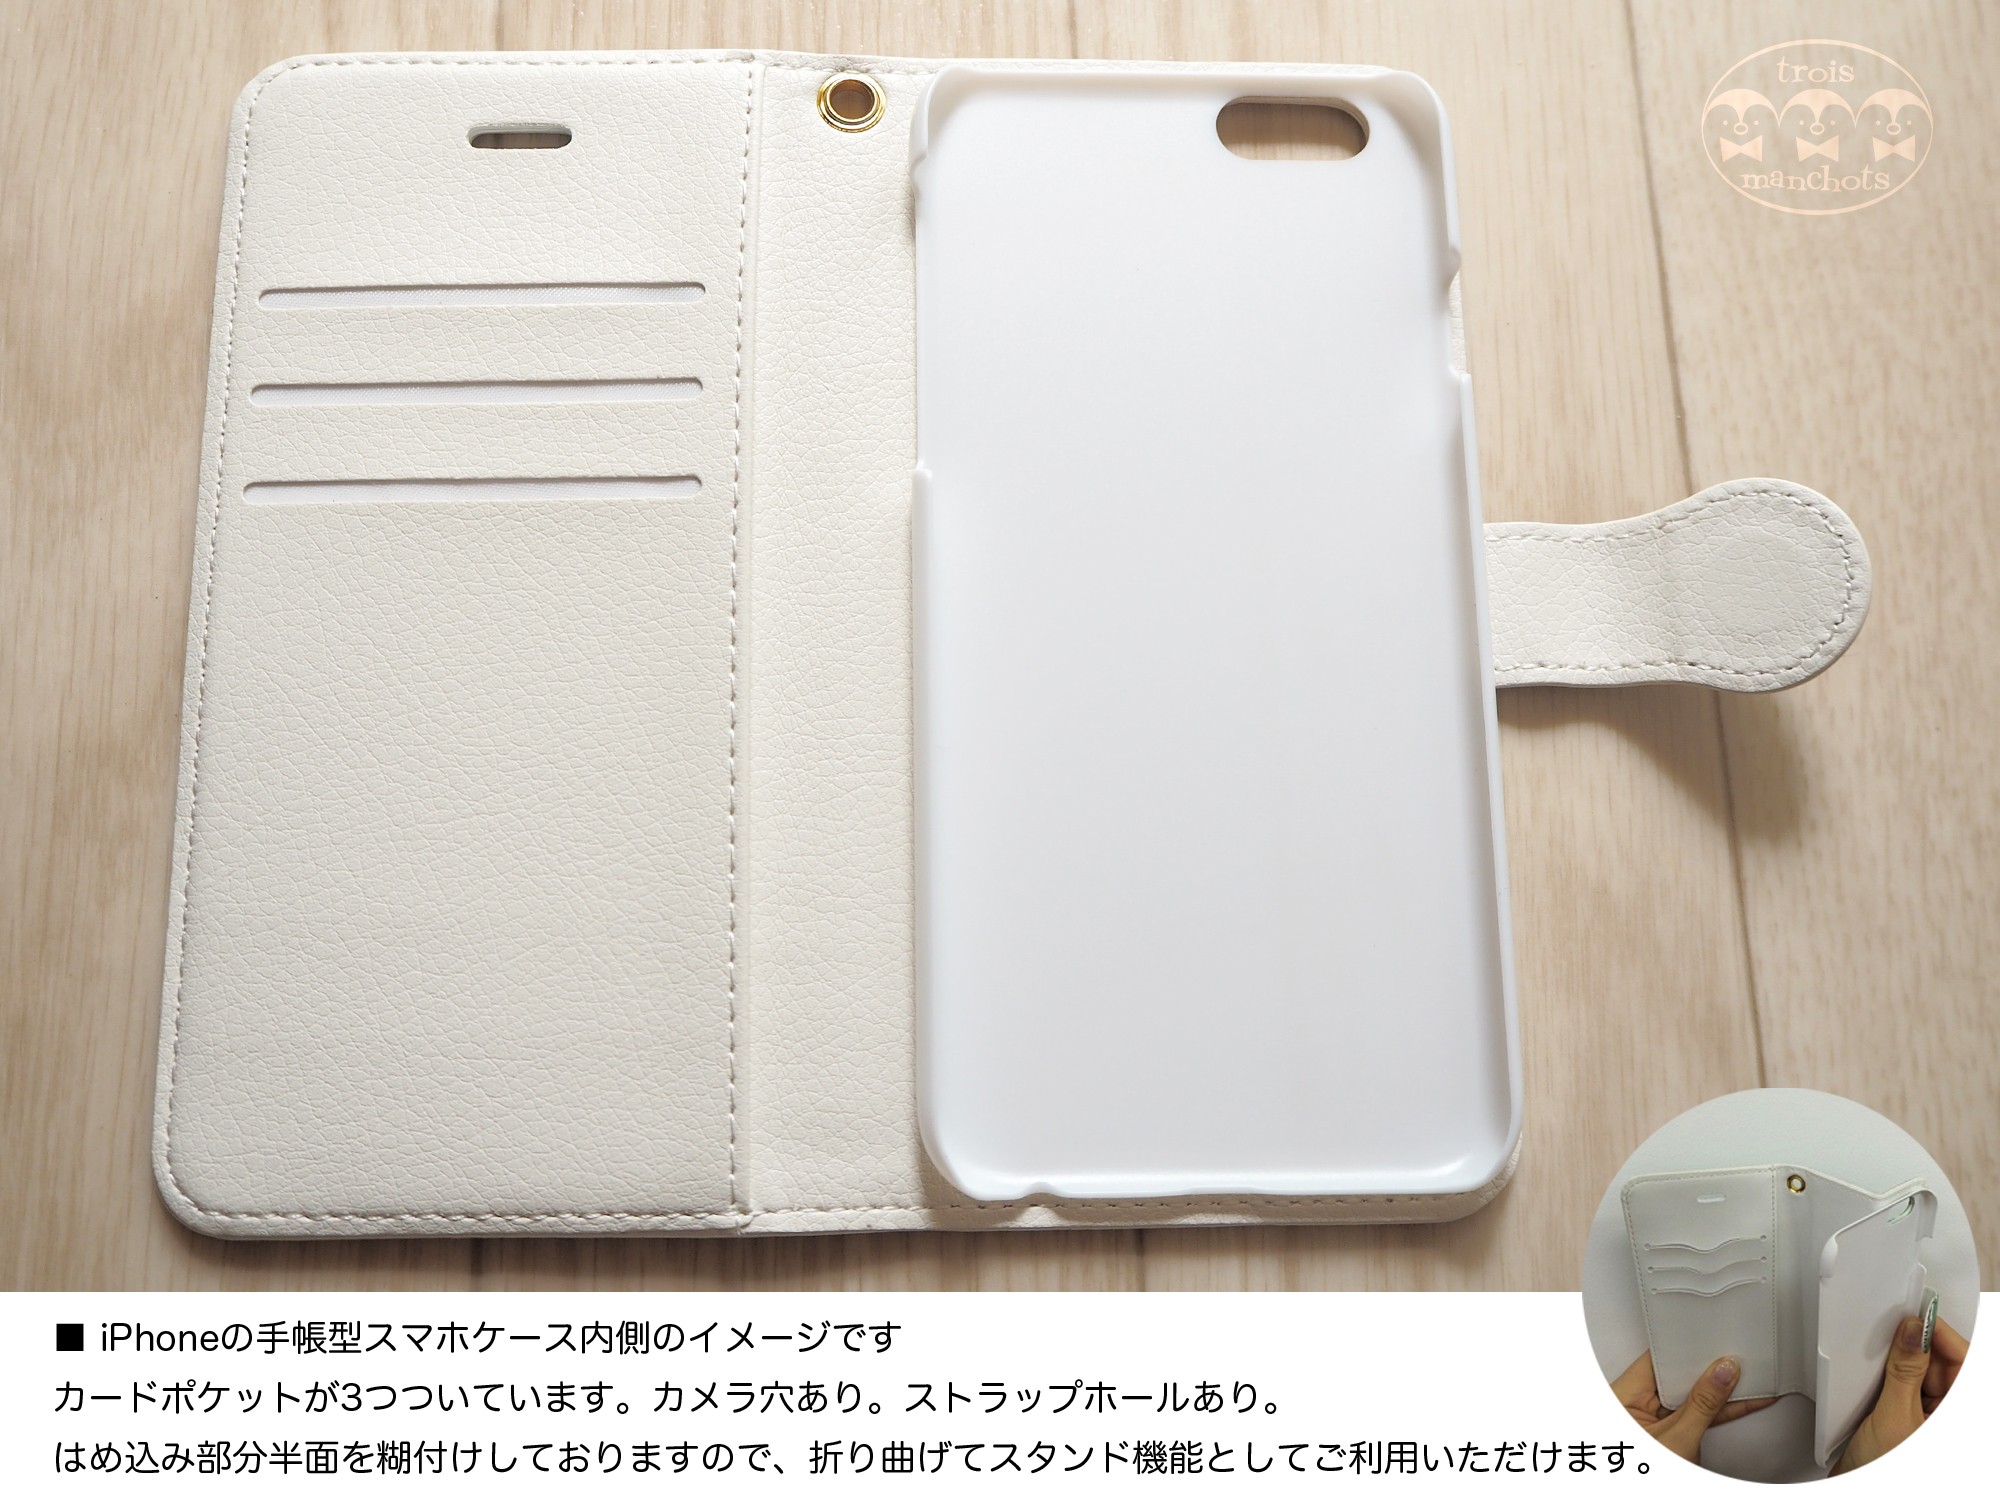 ニャーとバナーヌ 手帳型iphoneスマホケース 青 Iichi ハンドメイド クラフト作品 手仕事品の通販